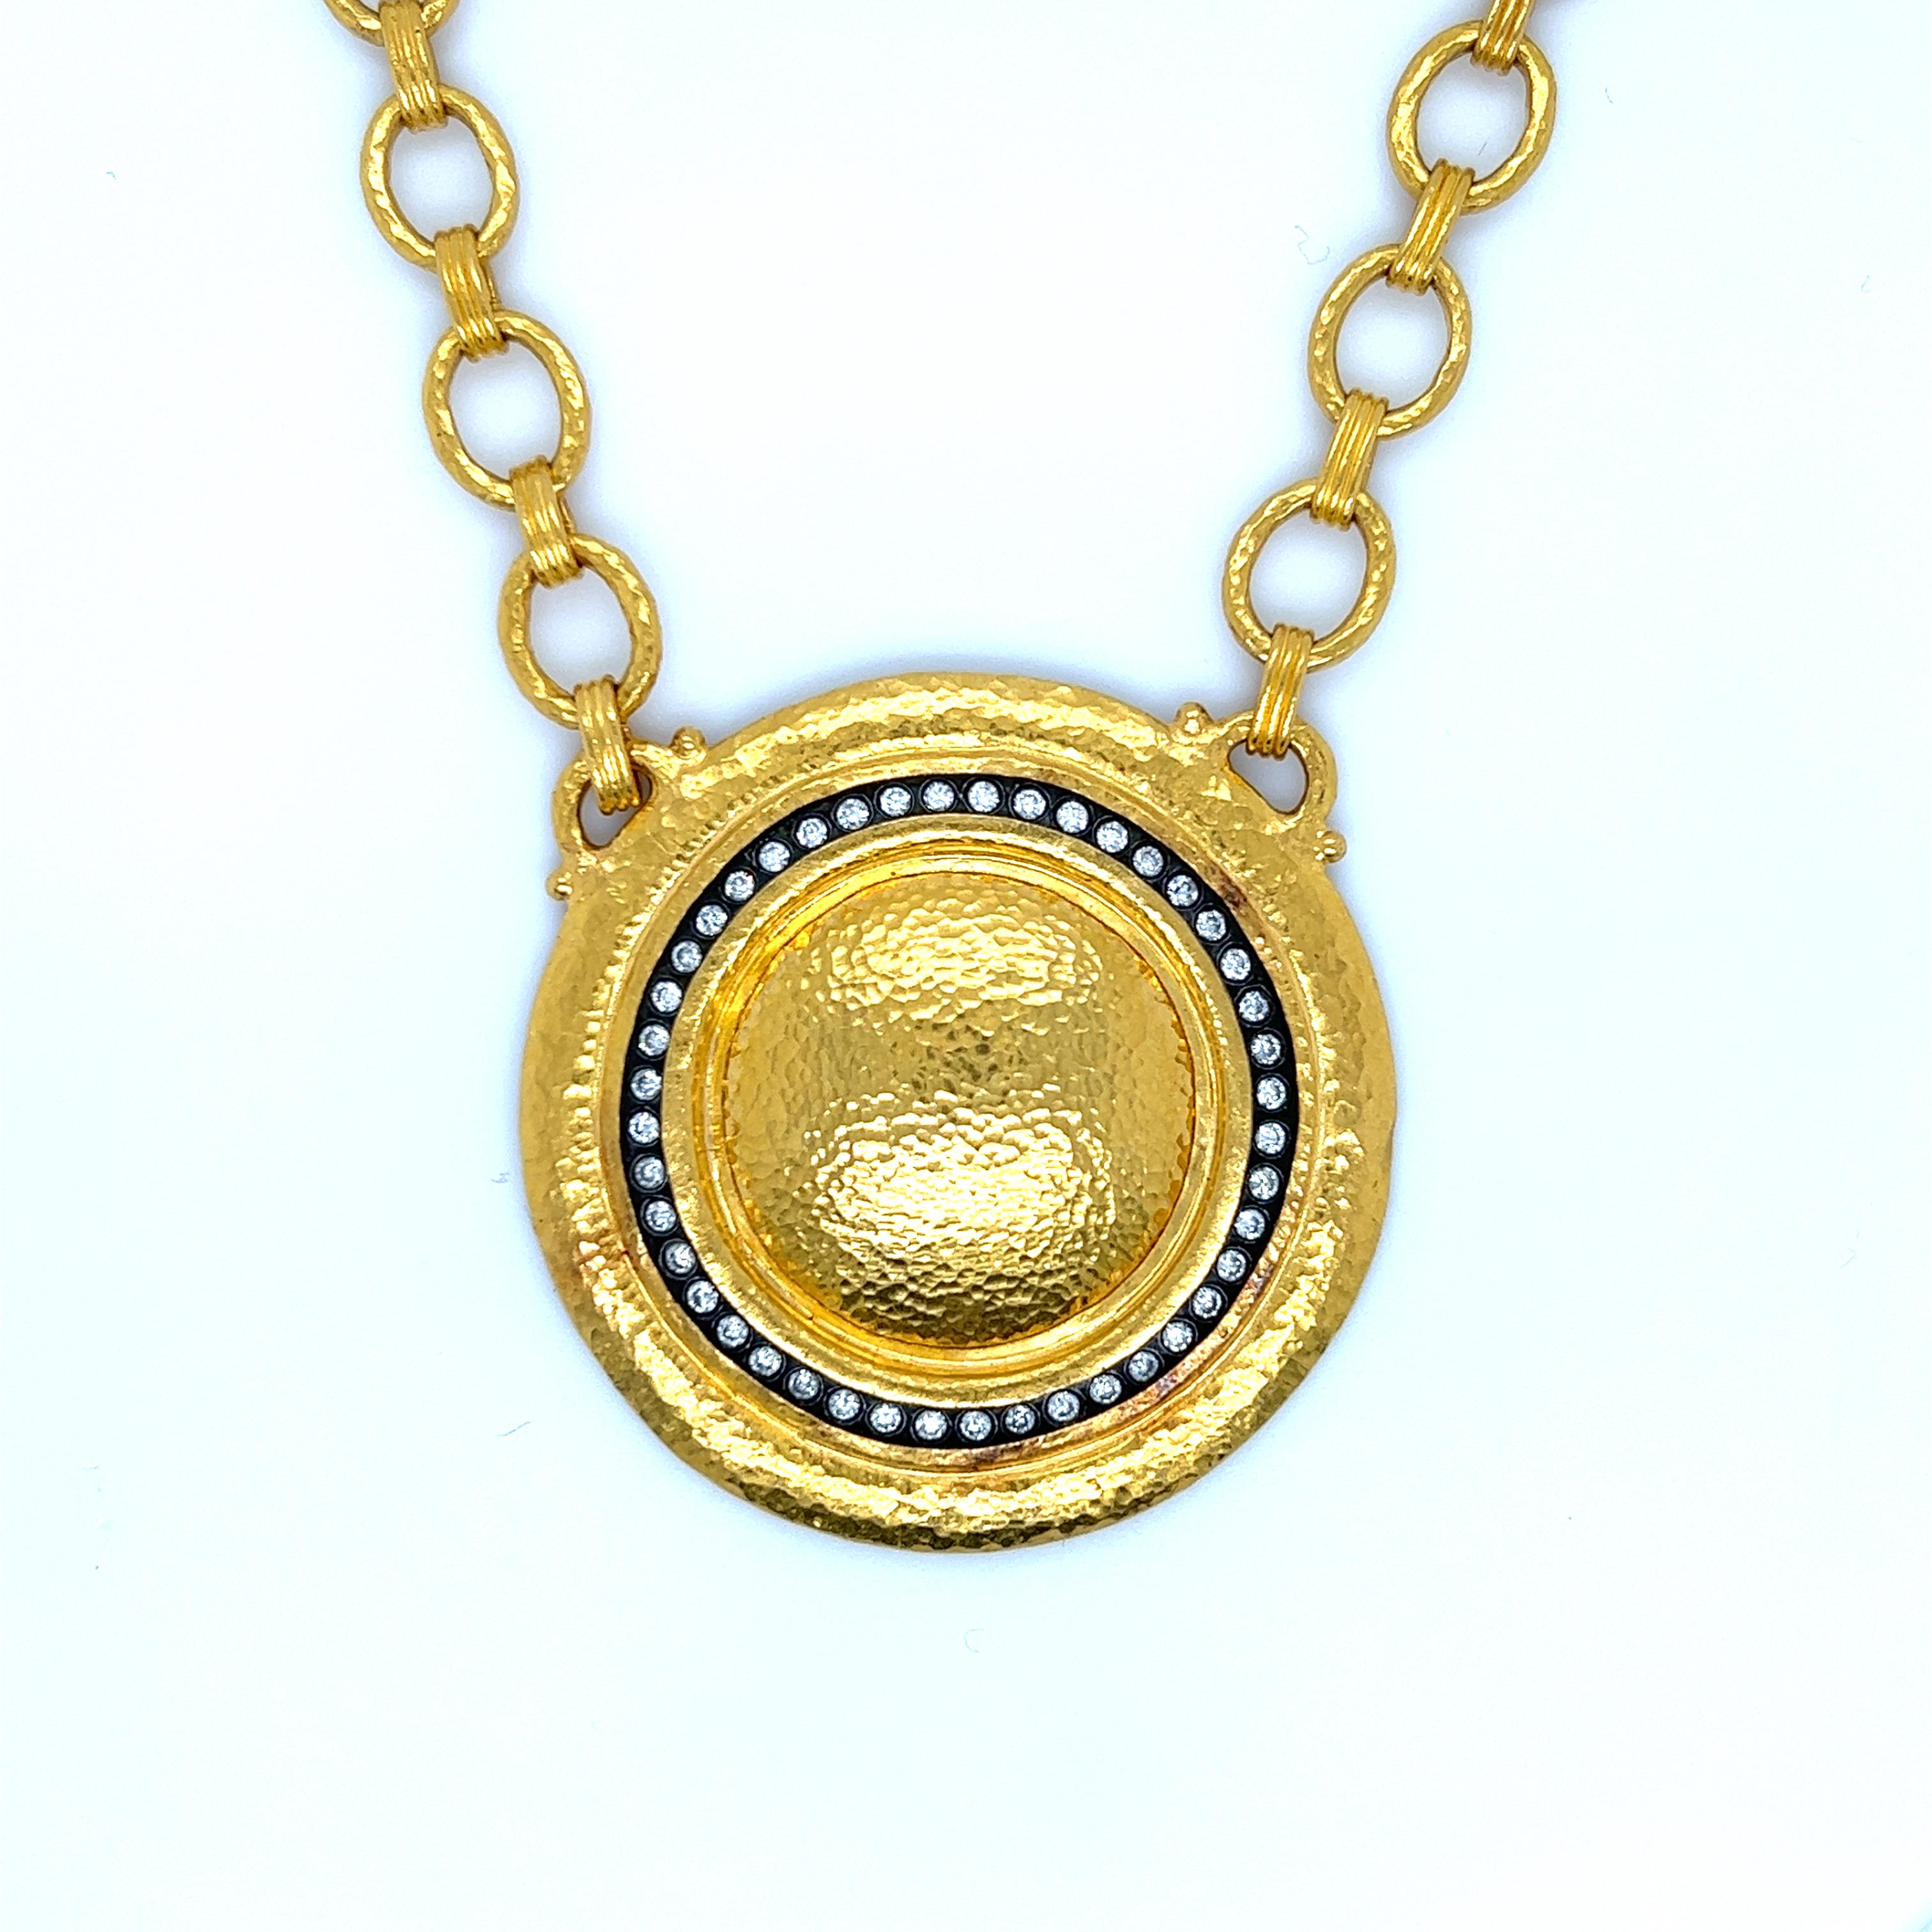 Magnifique collier réalisé à la main par le célèbre designer Gurhan. Gurhan est réputé pour avoir été le pionnier du renouveau de l'or 24 carats et pour l'avoir rendu populaire en tant que métal pour la création de bijoux fins contemporains.
Le